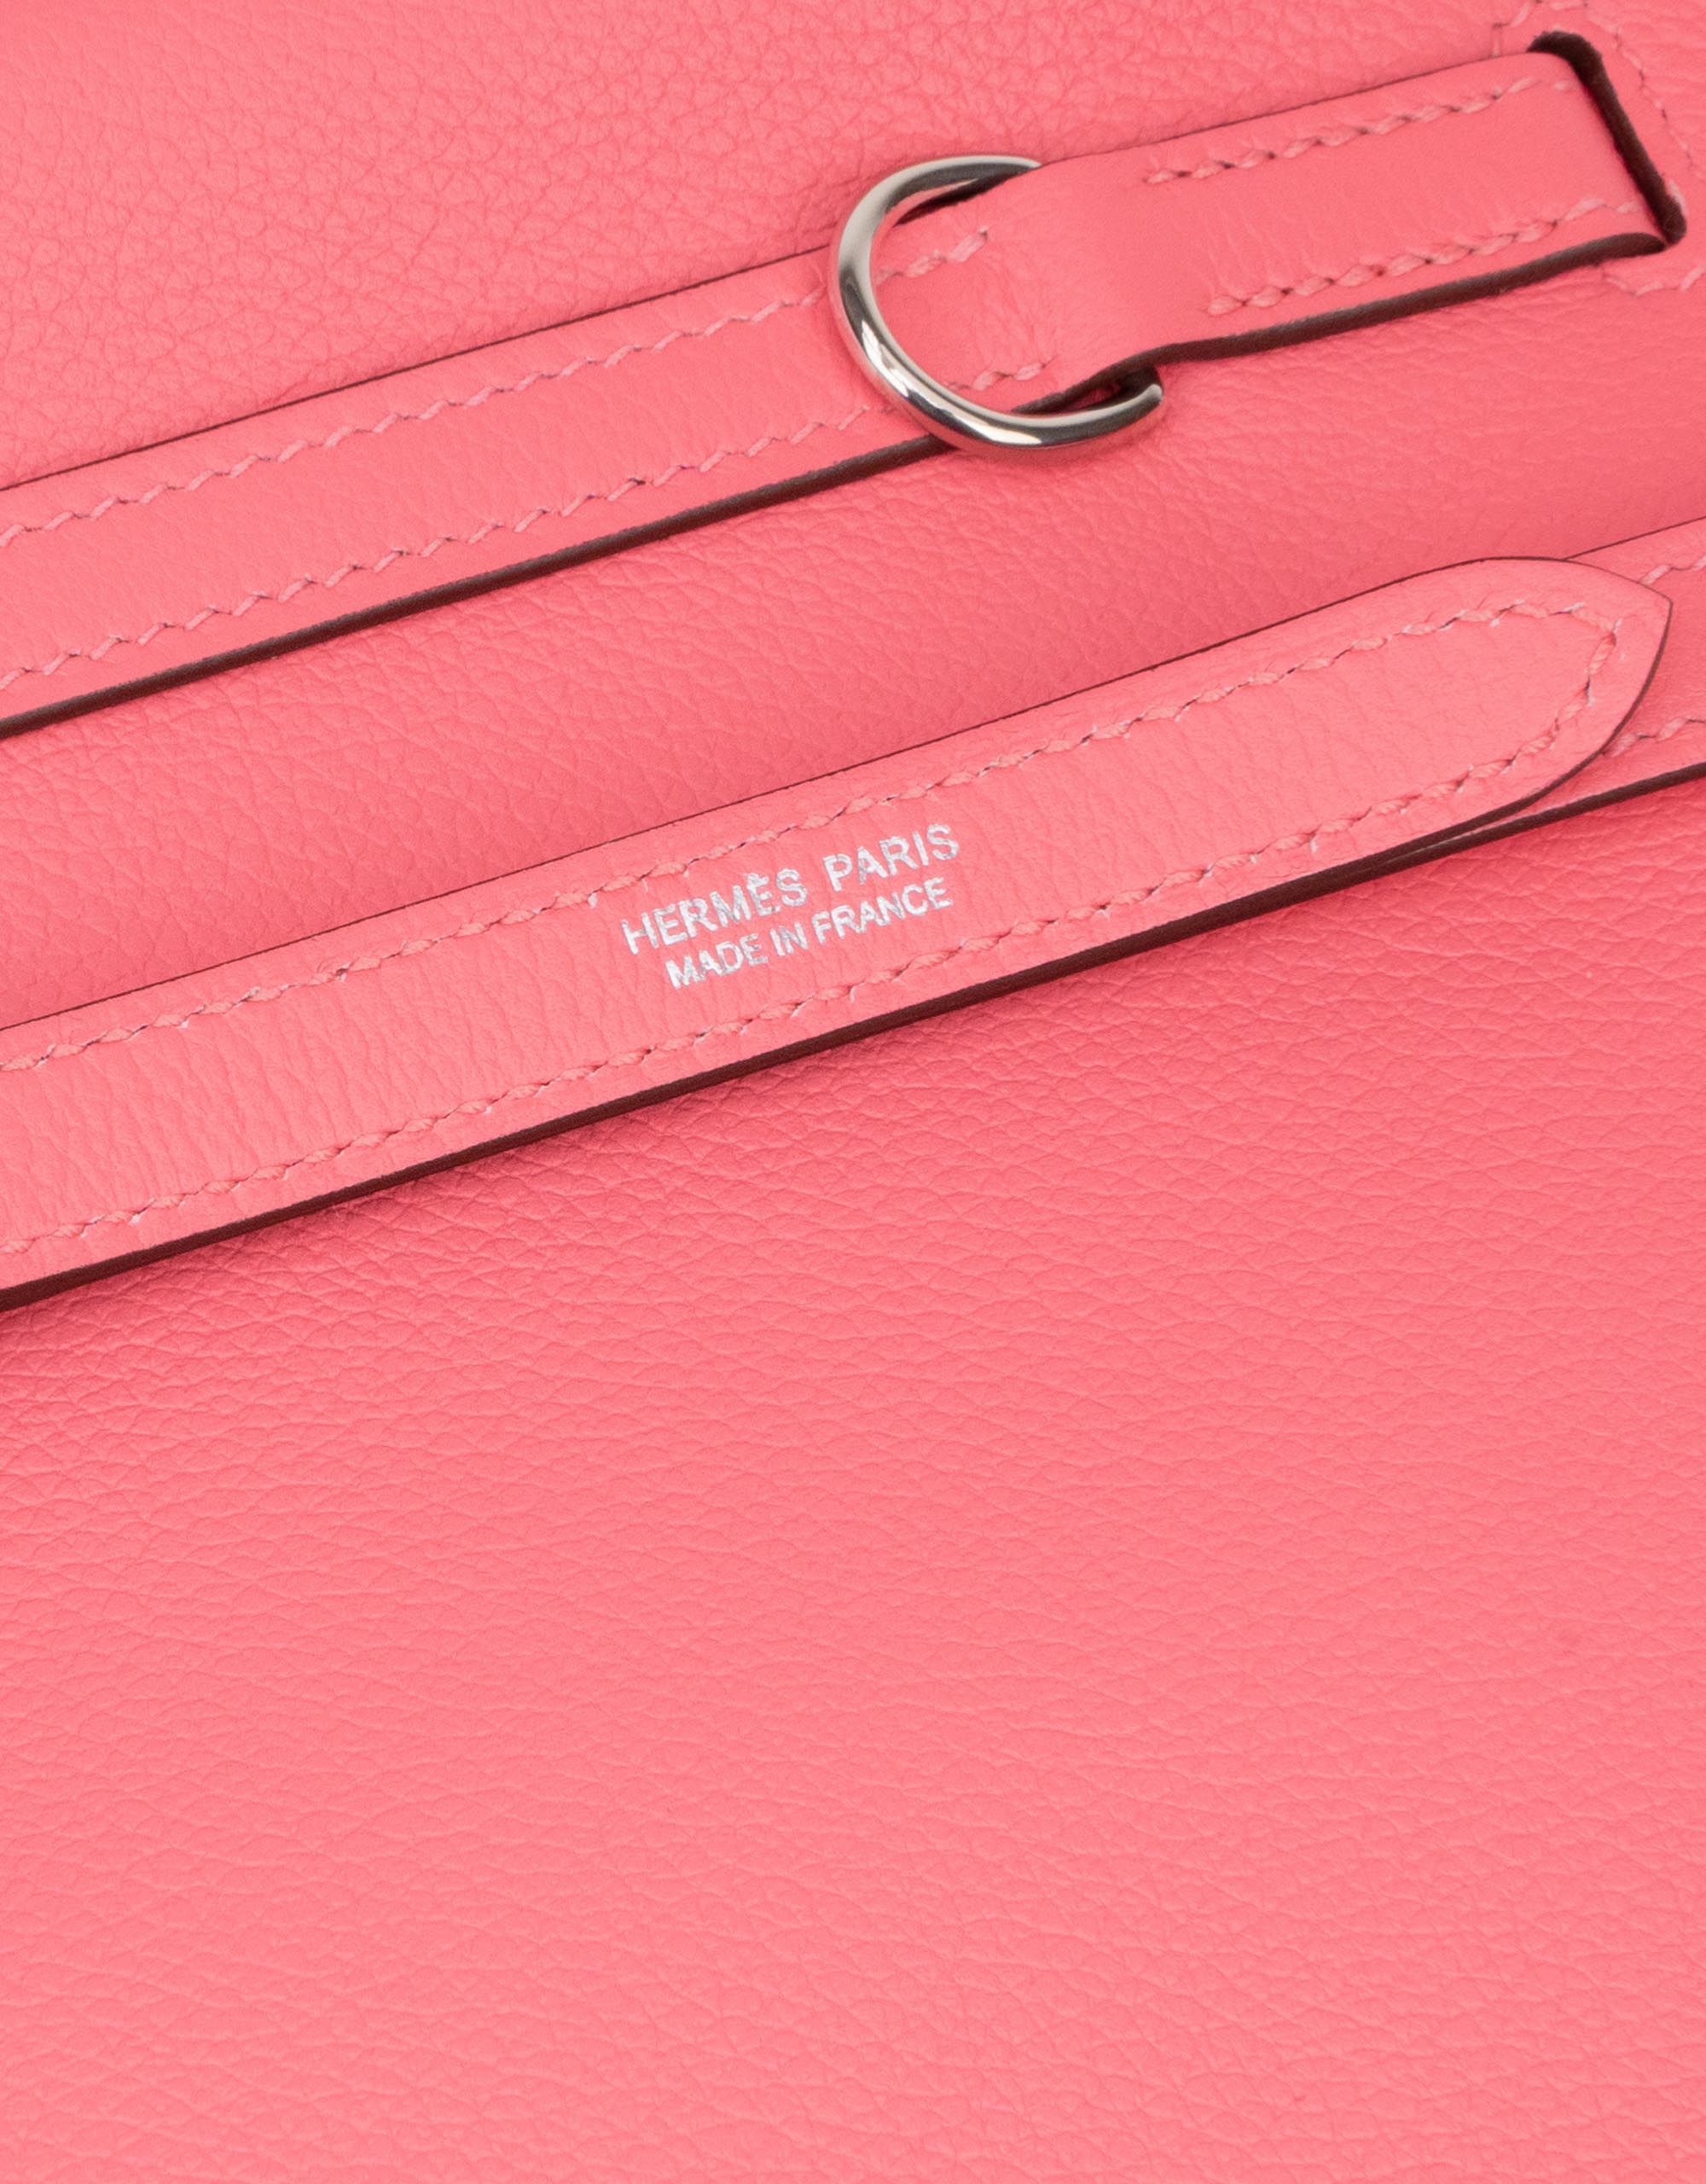 Sac Hermès d'occasion Kelly Danse Evercolor Rose Azalee Pink | Vendez votre sac de créateur sur Saclab.com